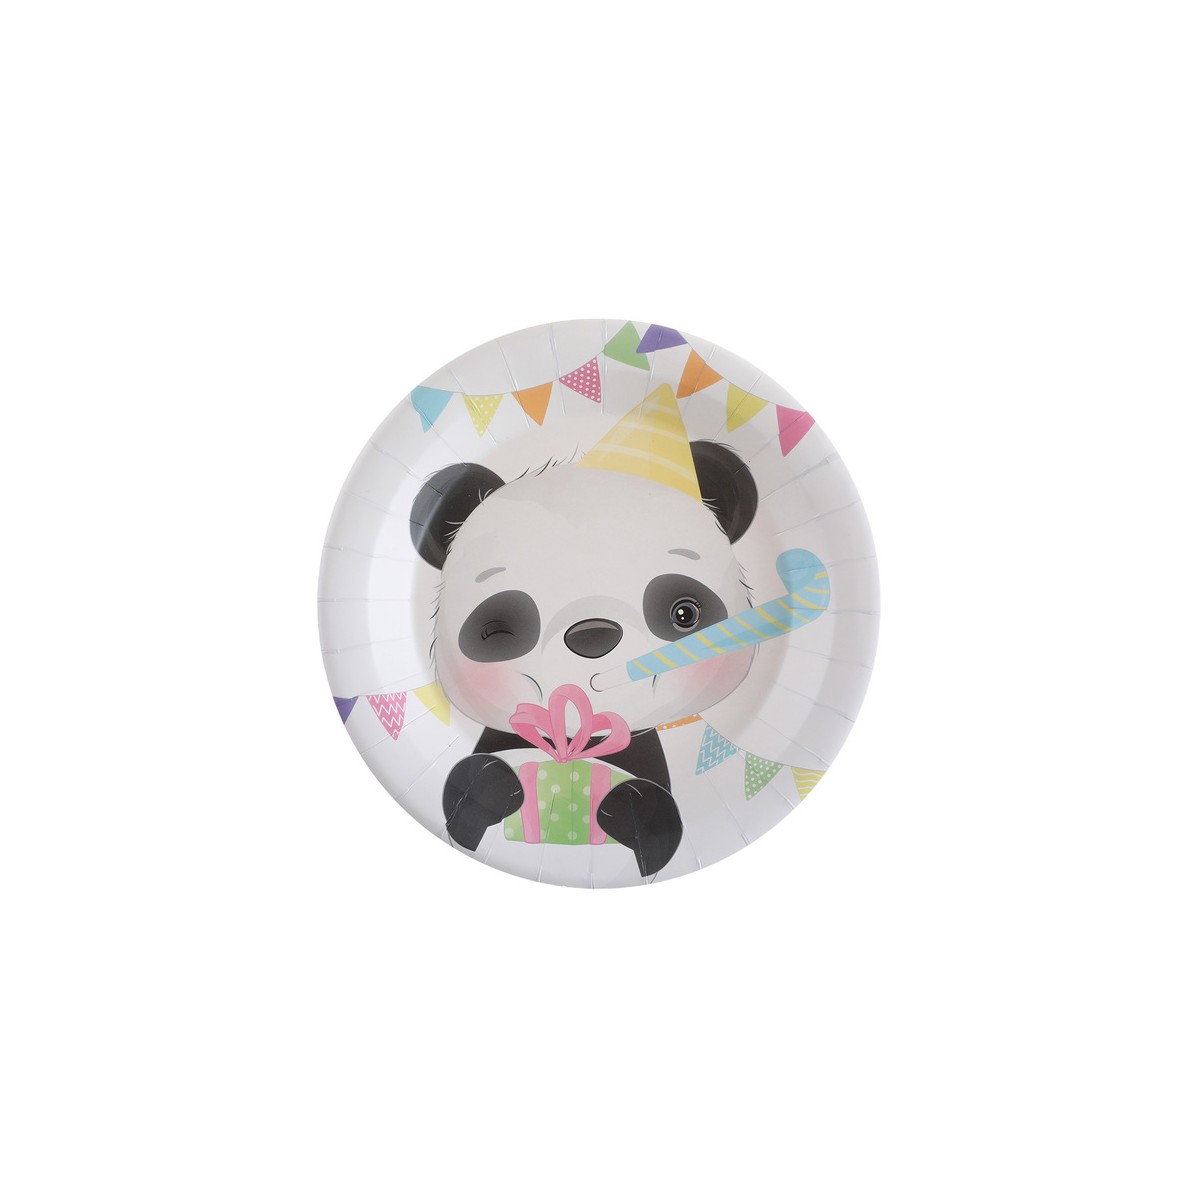 10x Assiettes anniversaire Panda